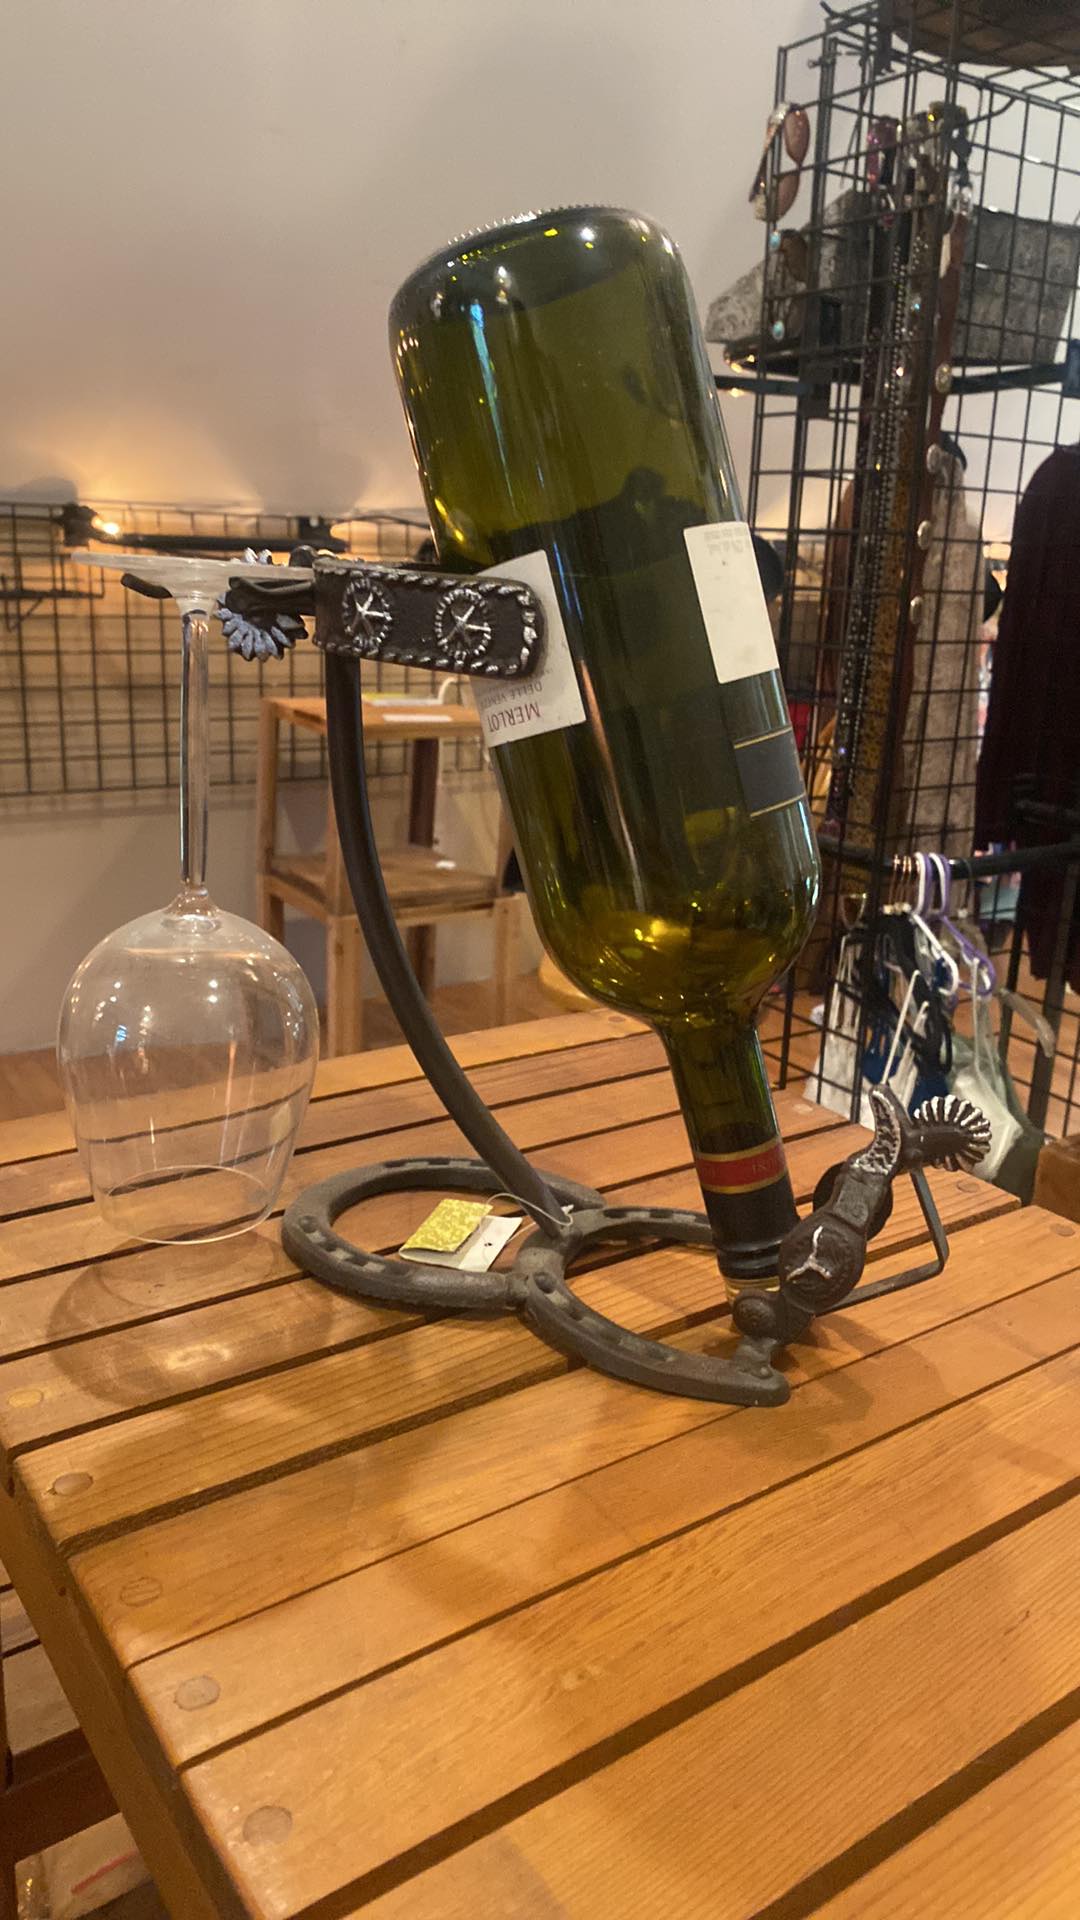 Upright Western Spur Wine Bottle Holder